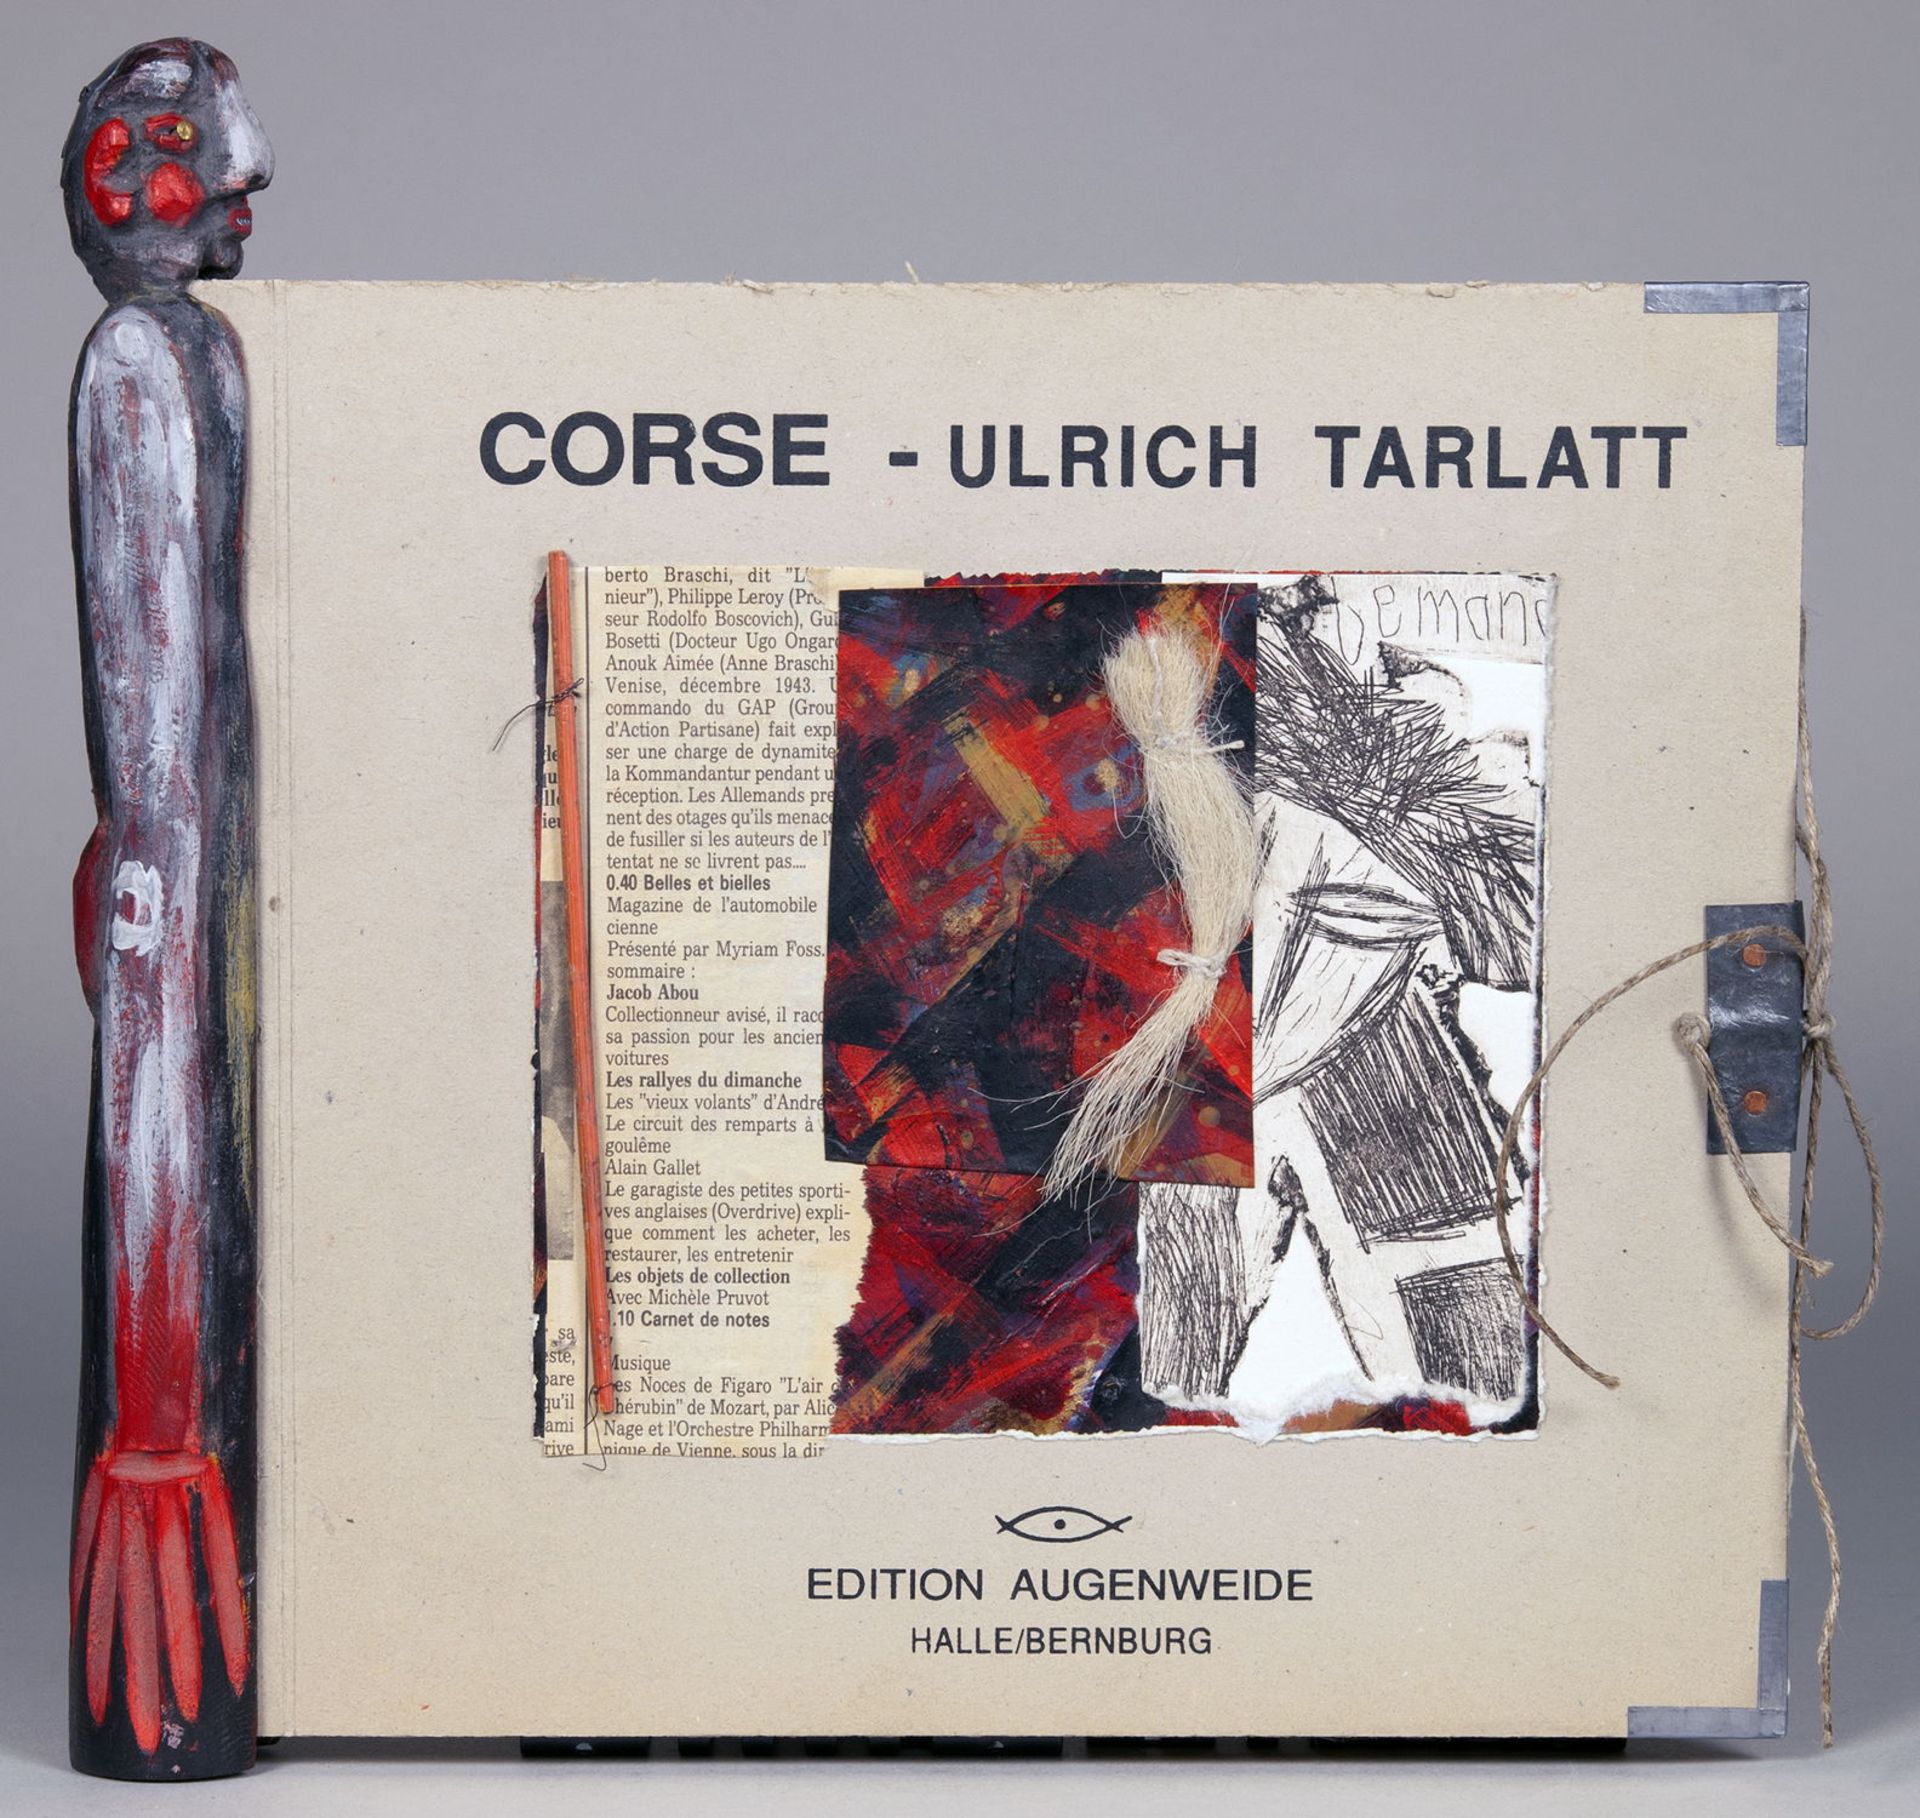 Edition Augenweide - Ulrich Tarlatt. Corse.